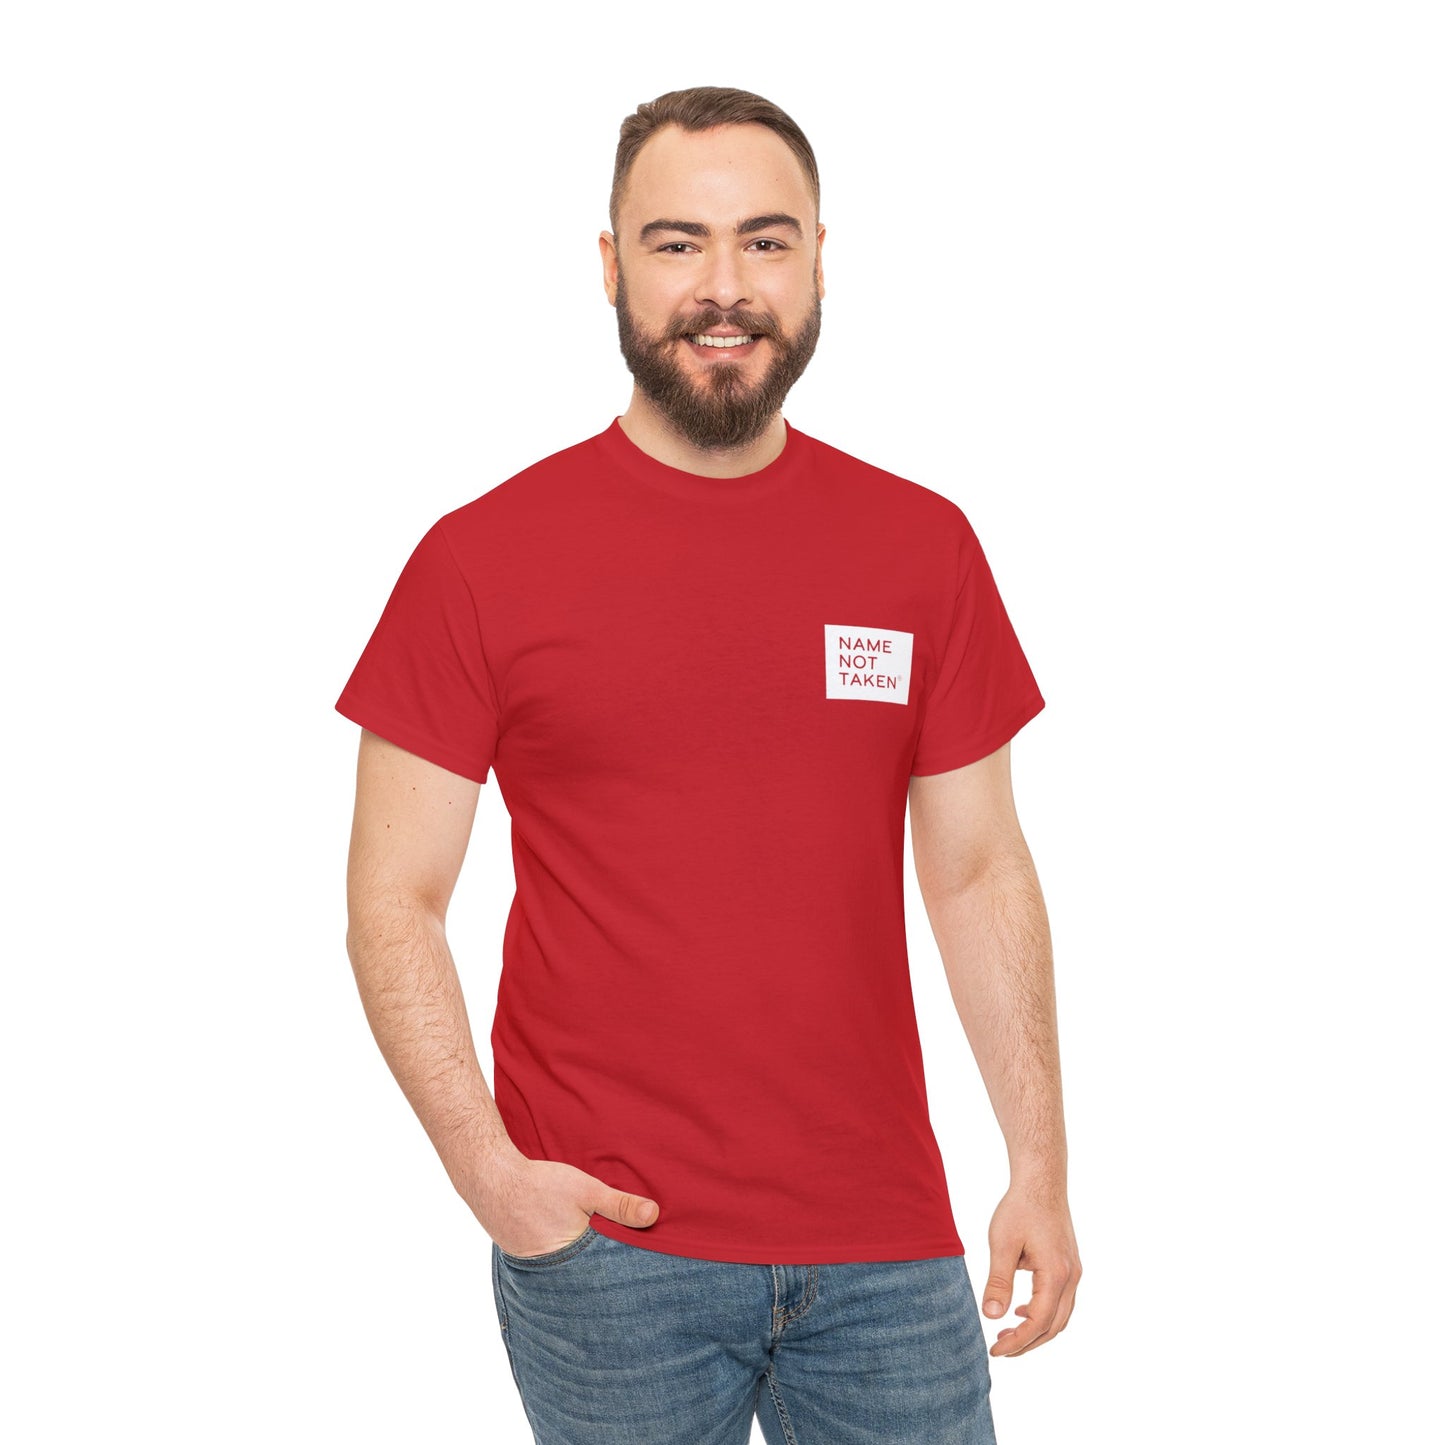 Camiseta de algodón pesado de la costa sur | Red